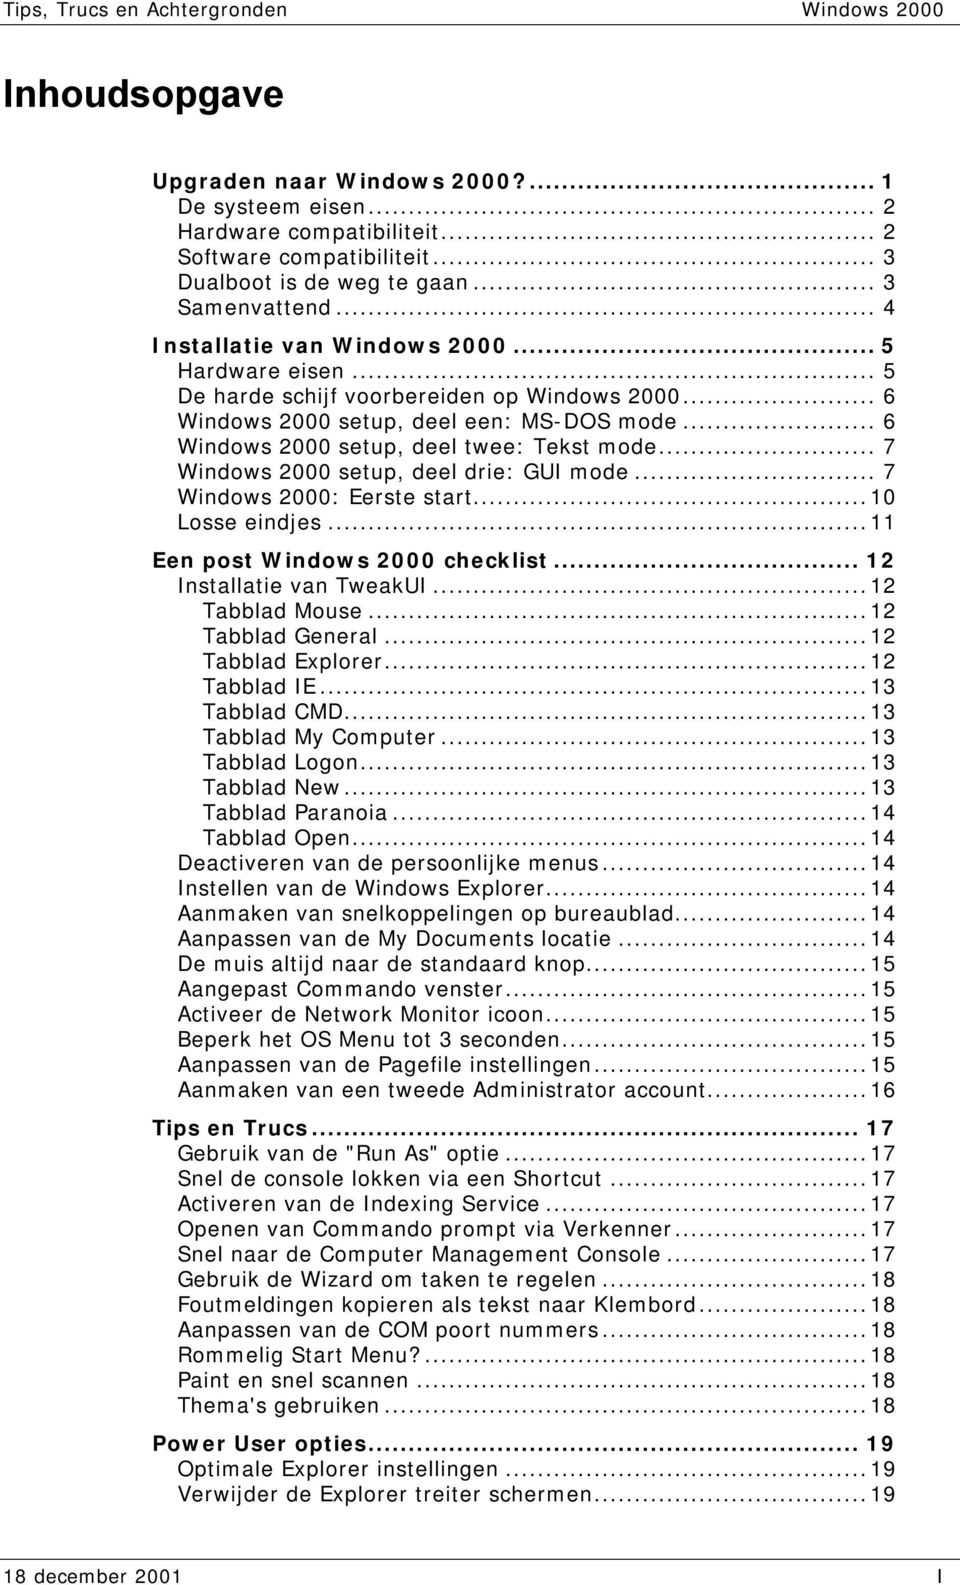 .. 7 Windows 2000 setup, deel drie: GUI mode... 7 Windows 2000: Eerste start...10 Losse eindjes...11 Een post Windows 2000 checklist... 12 Installatie van TweakUI...12 Tabblad Mouse.